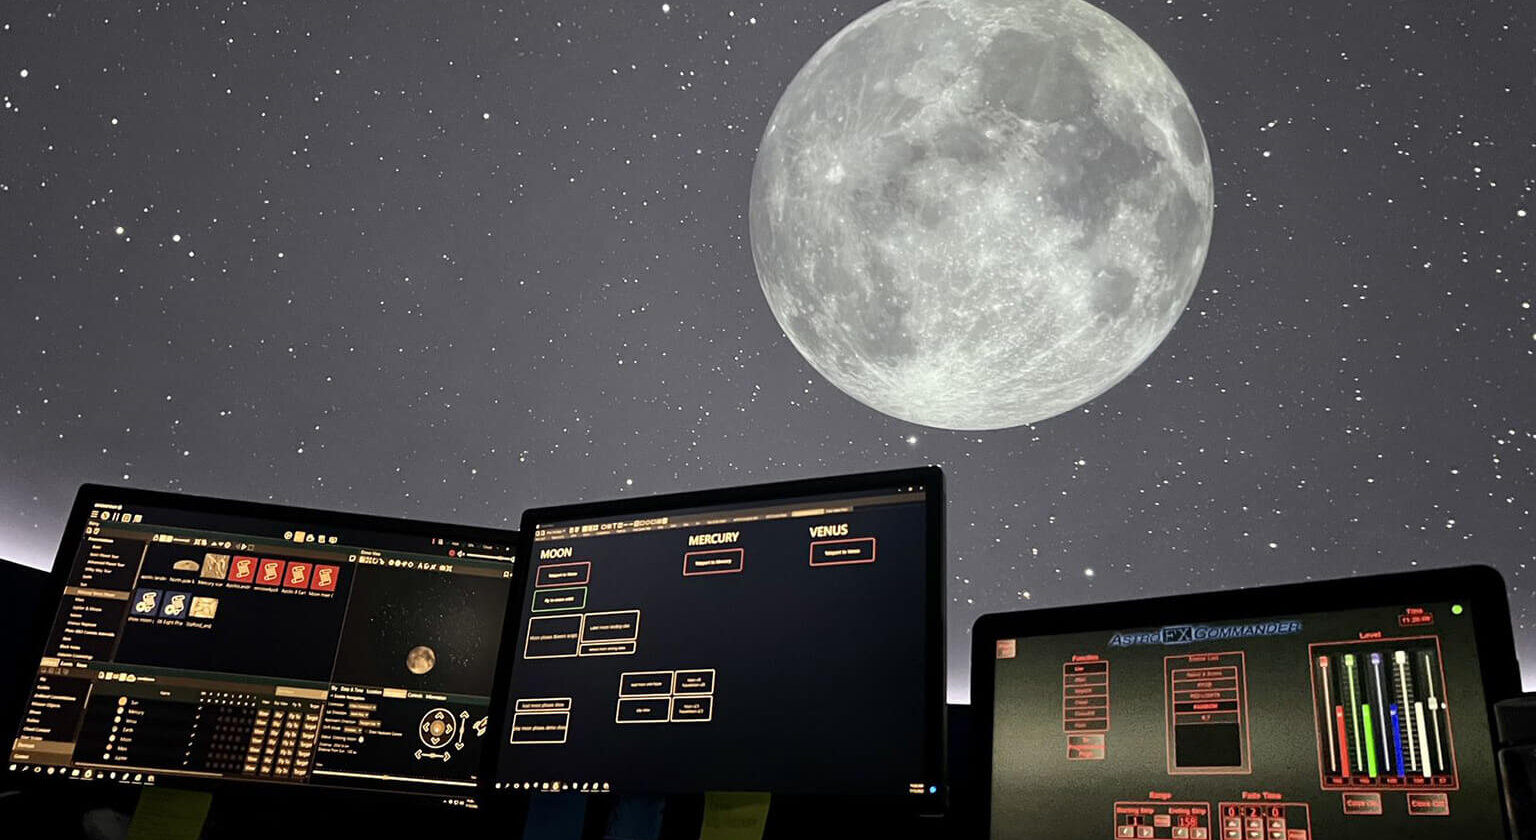 monitors and moon image